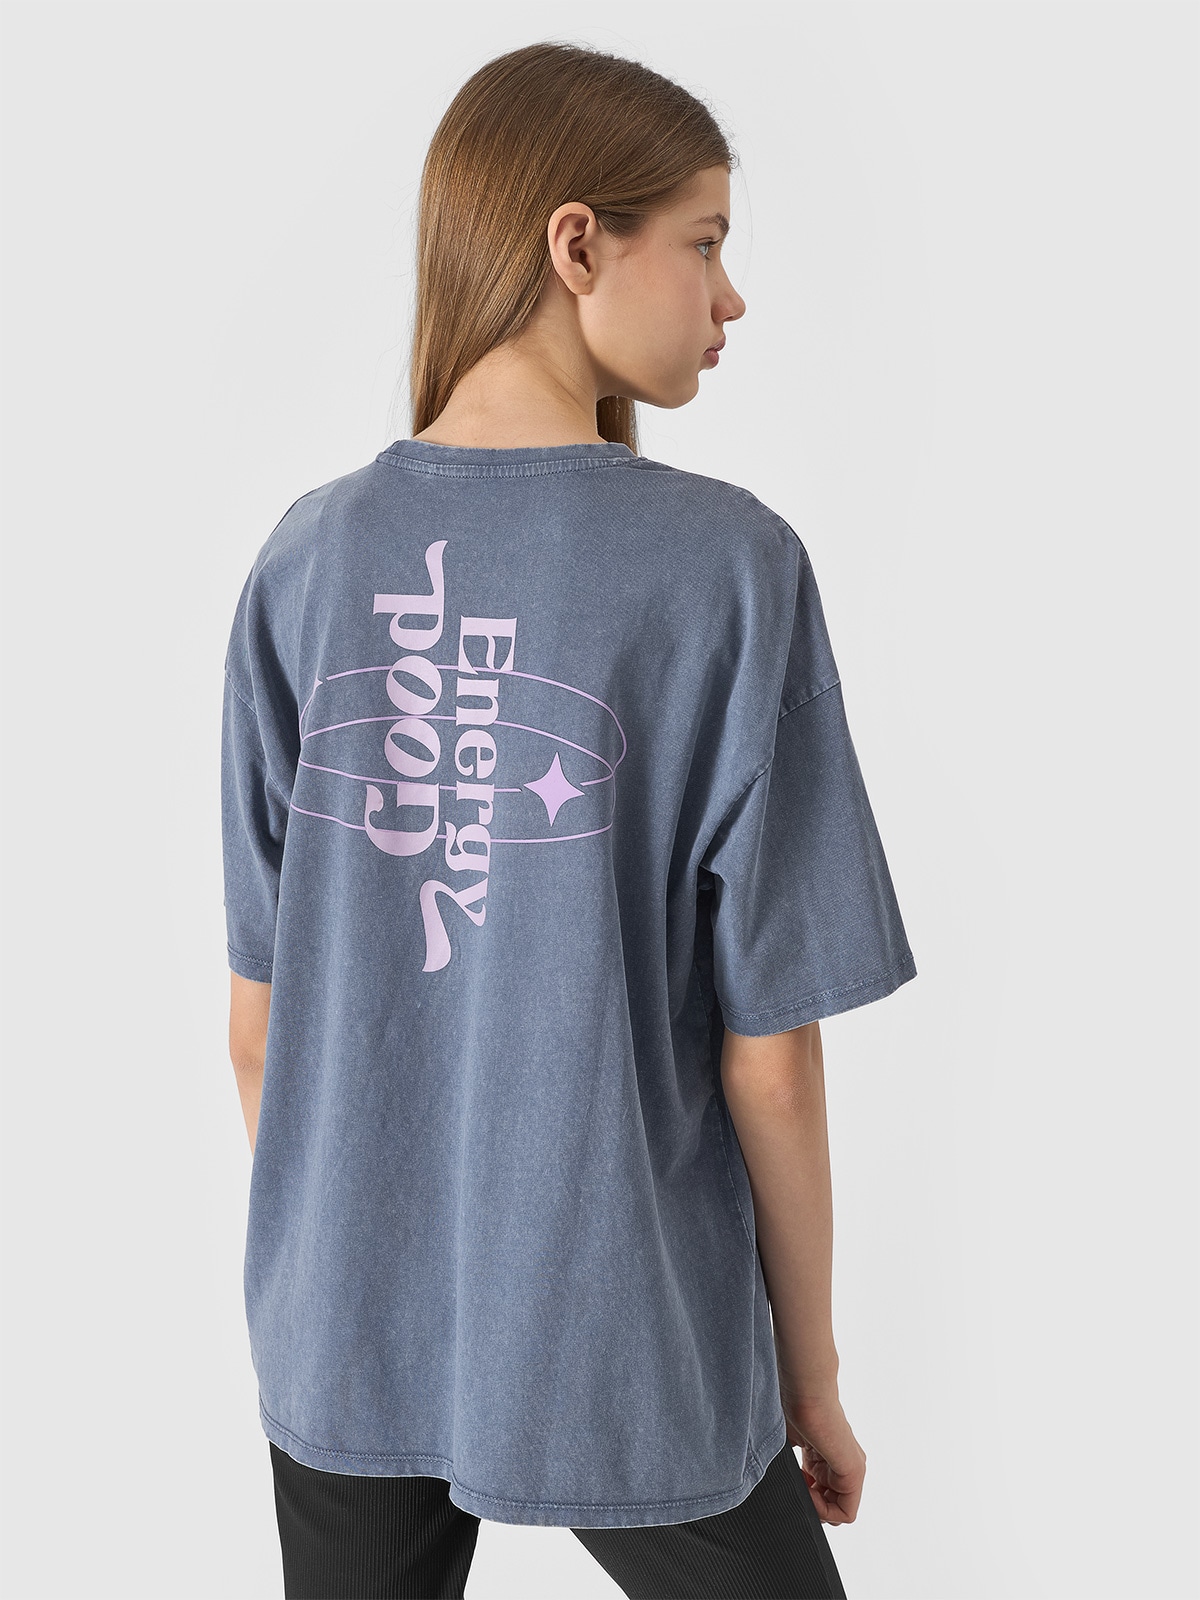 Dievčenské tričko s potlačou - šedé